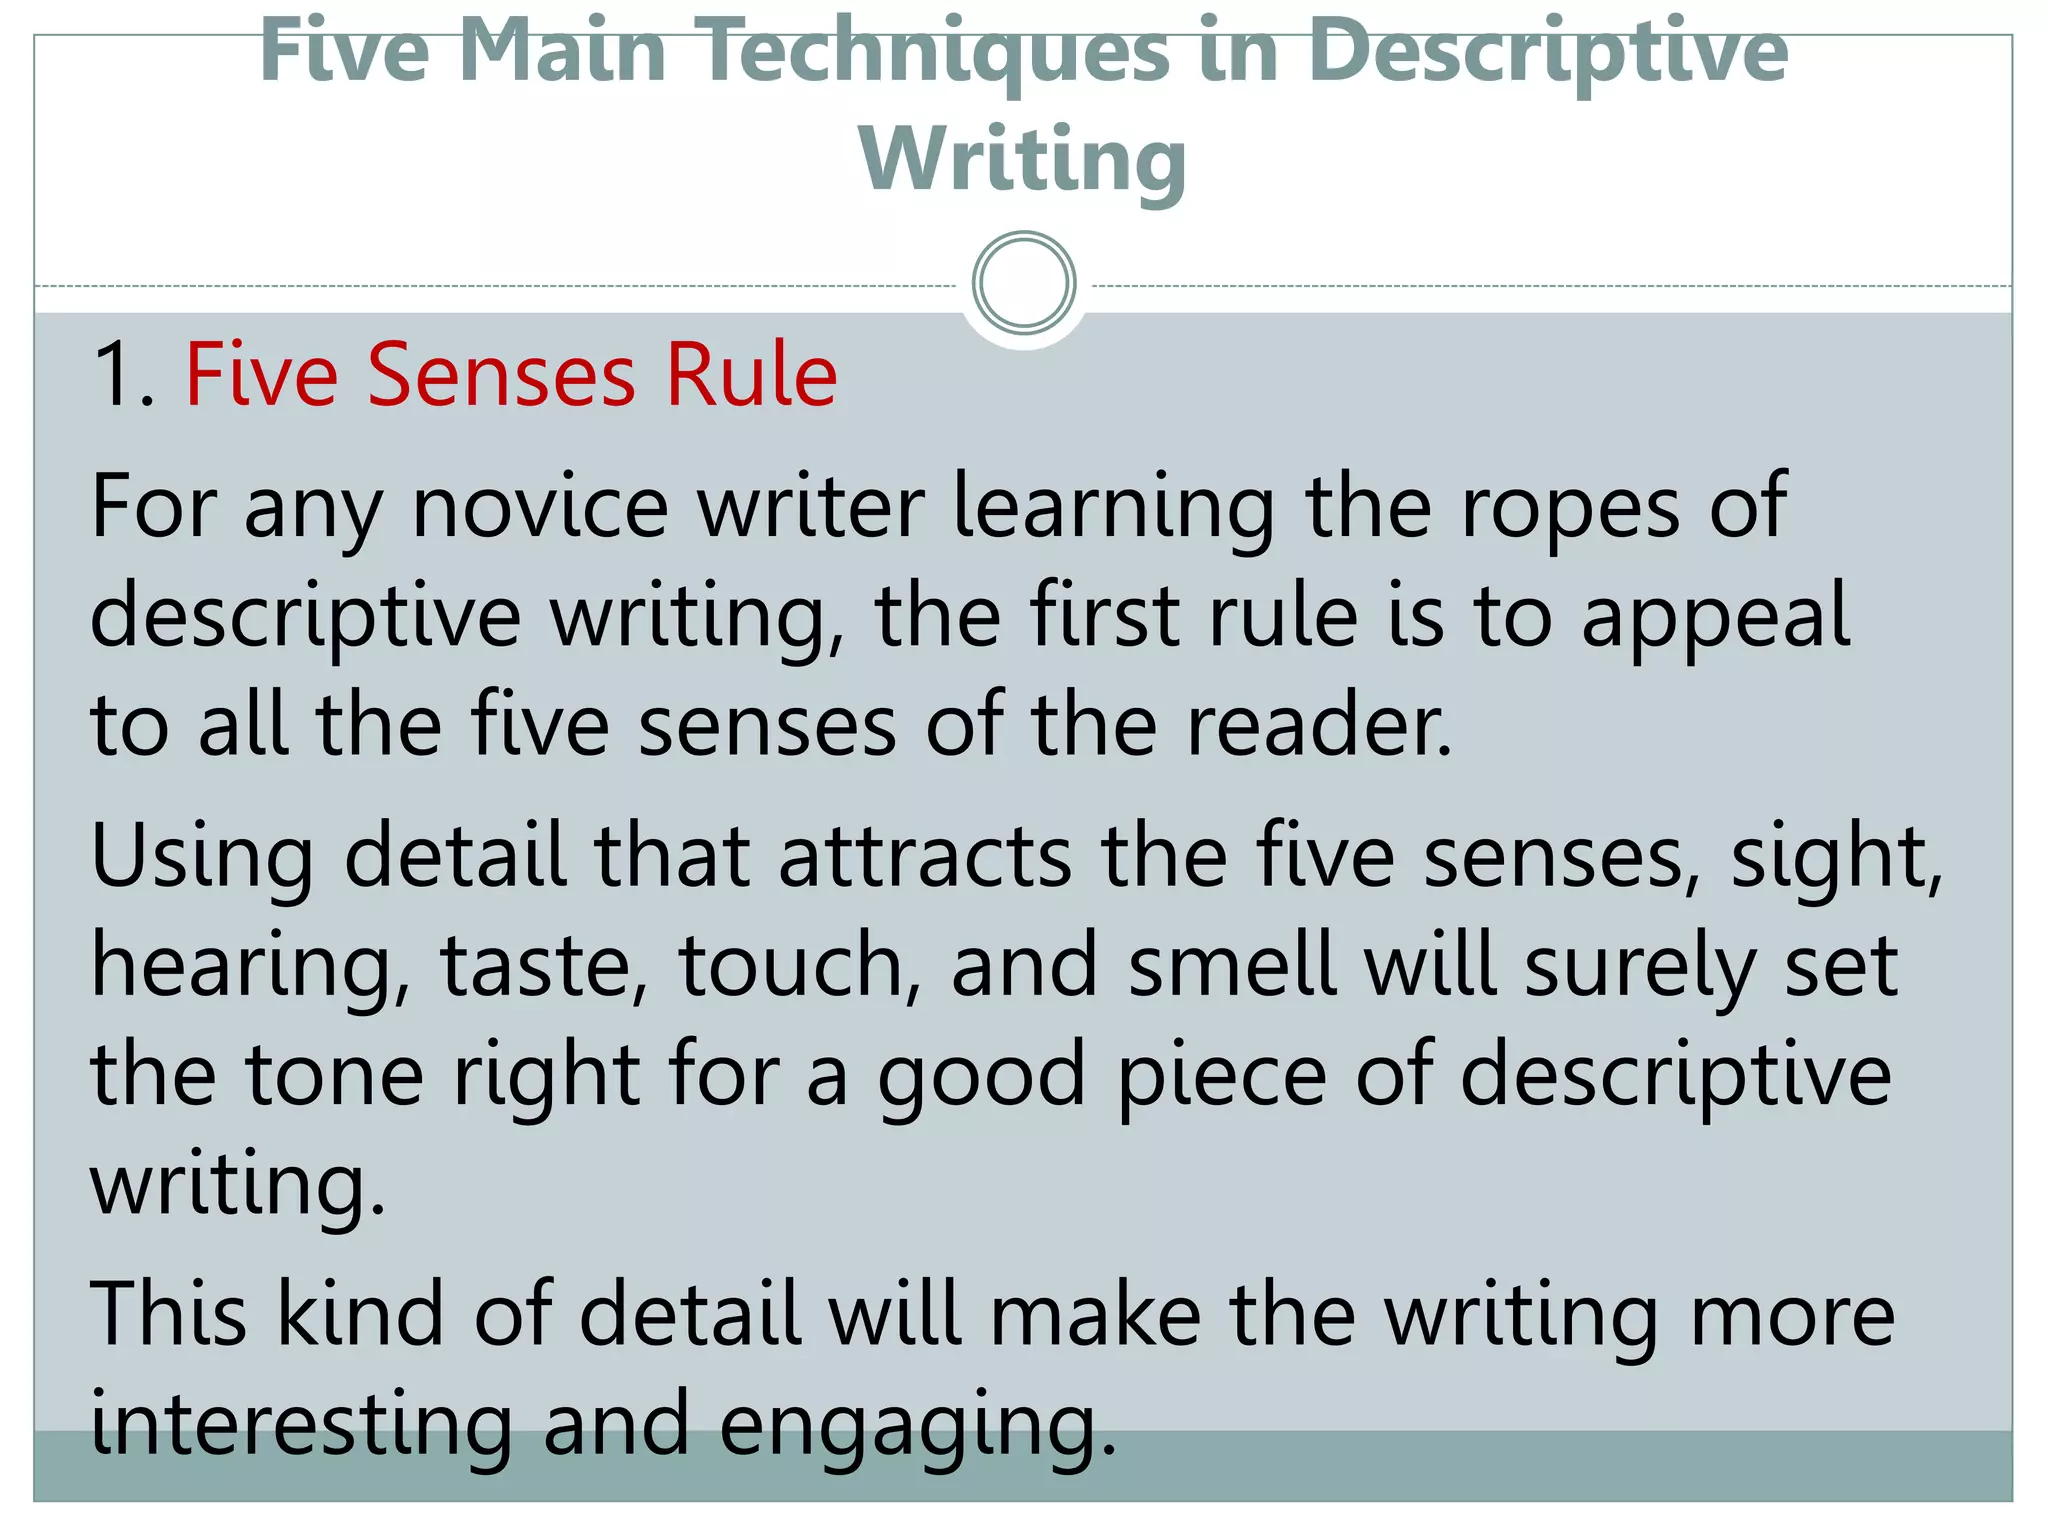 how to write a good piece of descriptive writing